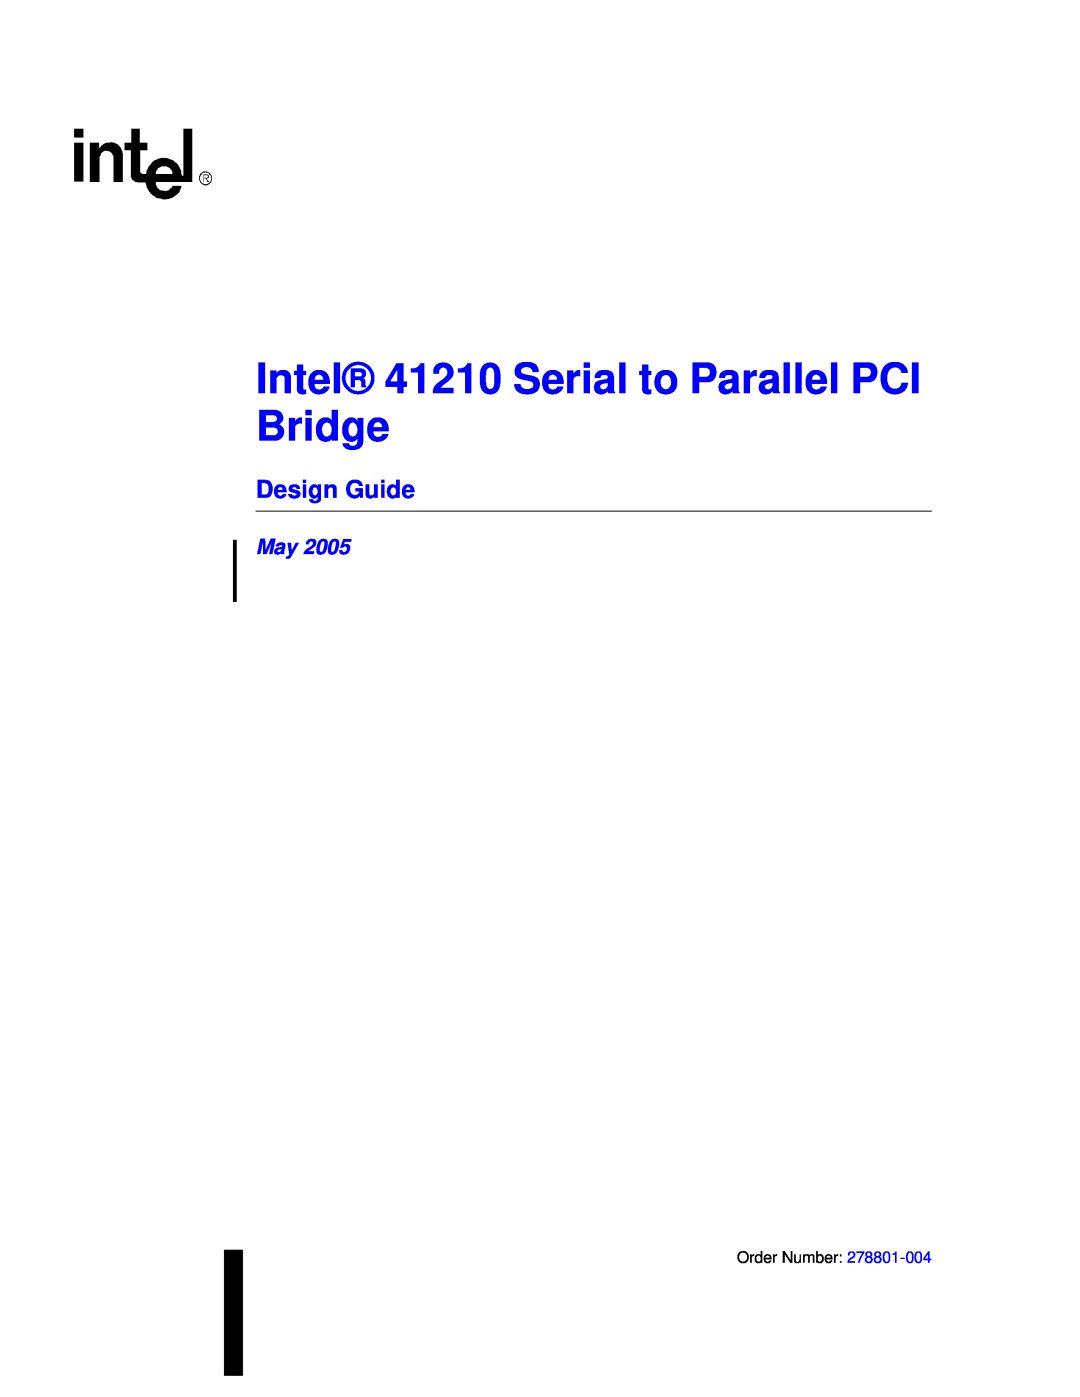 Intel manual Design Guide, Intel 41210 Serial to Parallel PCI Bridge 